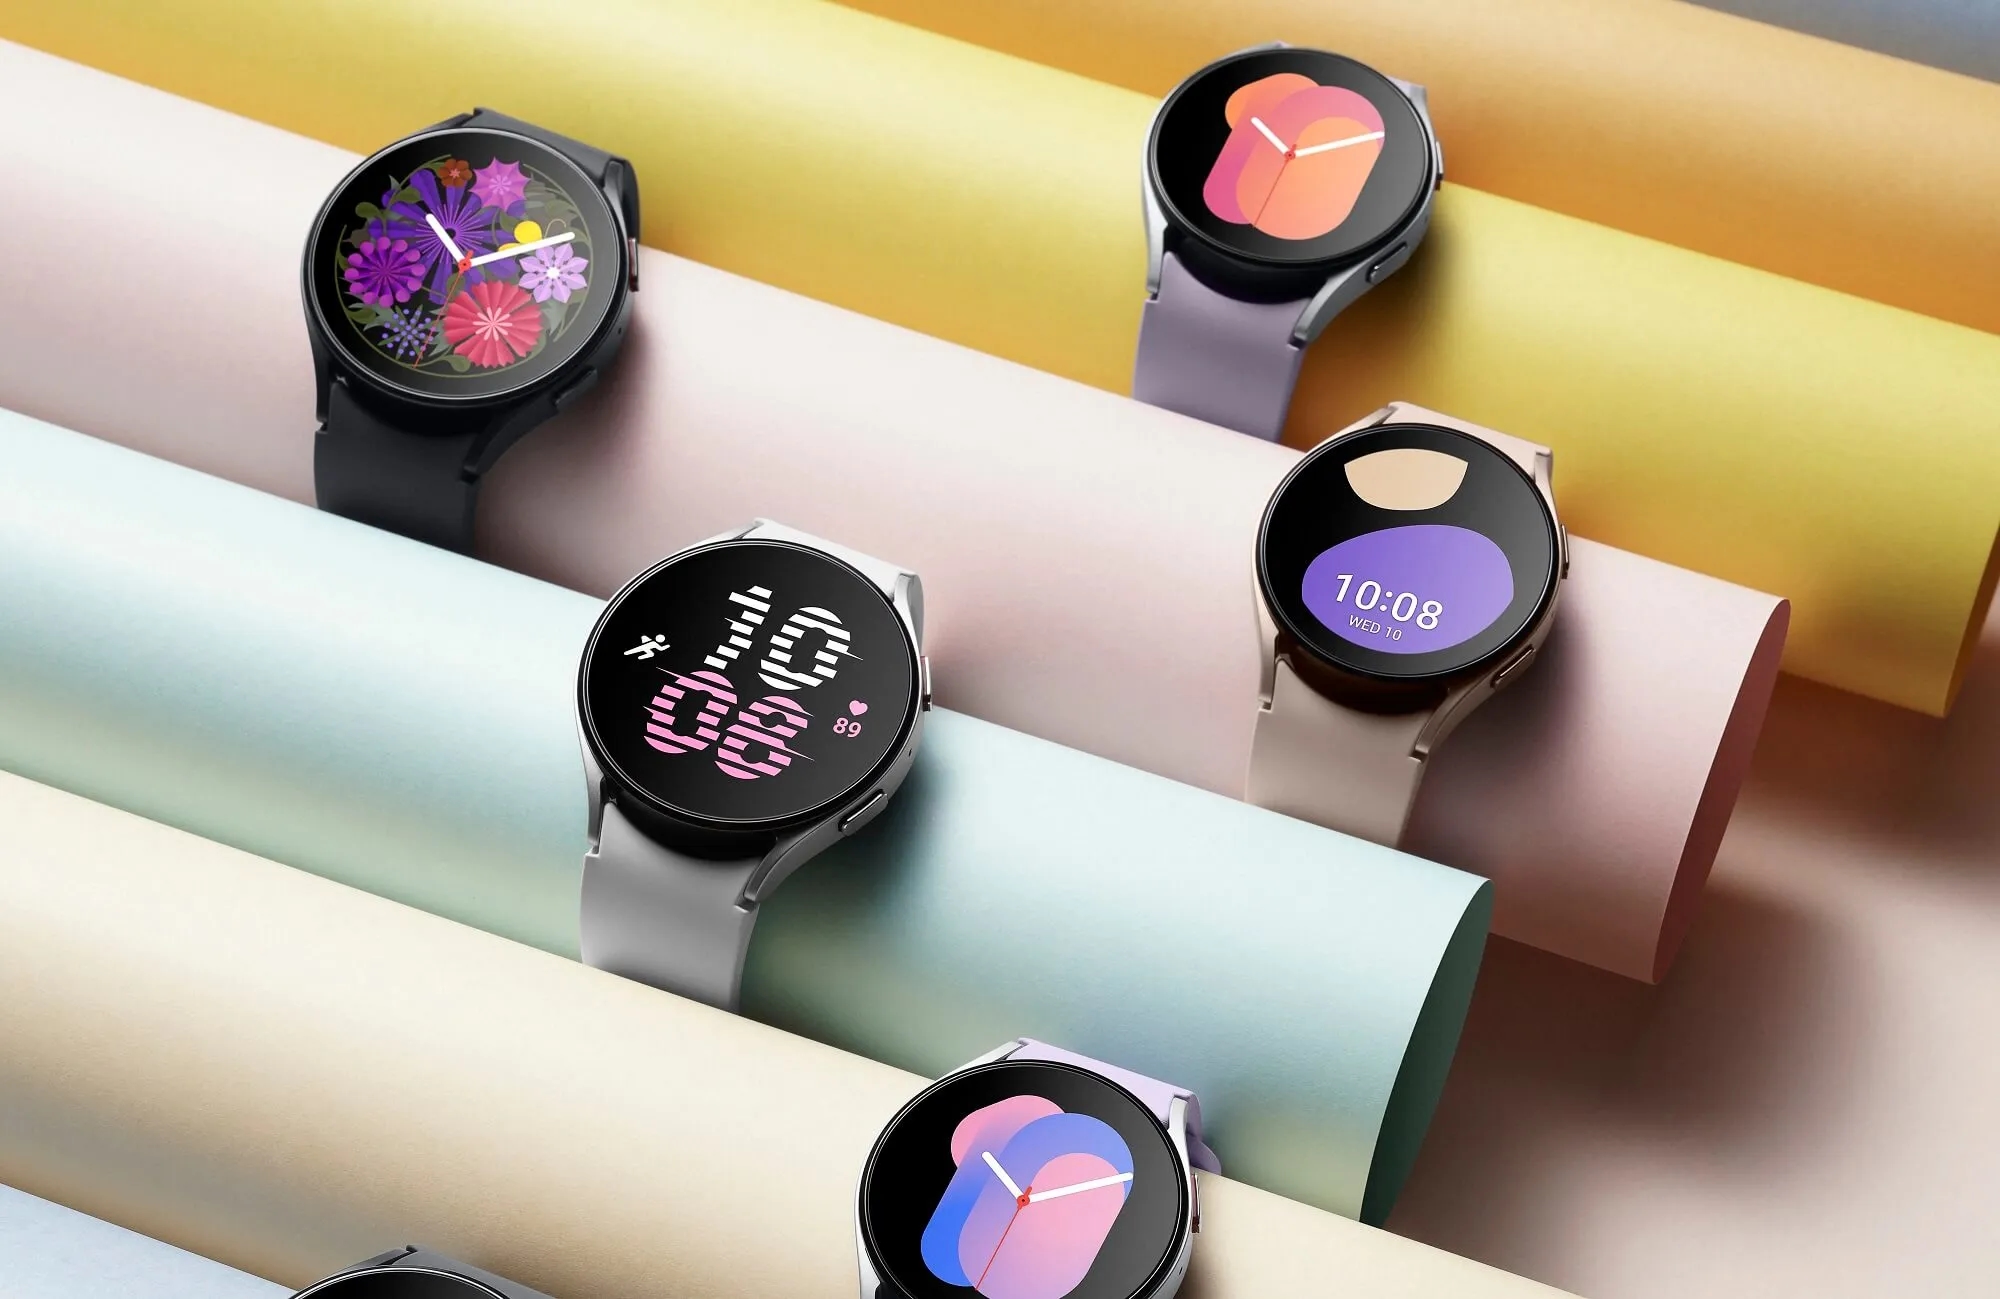 Samsung Galaxy Watch 5 Smartwatch kann auf Amazon mit einem Rabatt von bis zu $60 gekauft werden